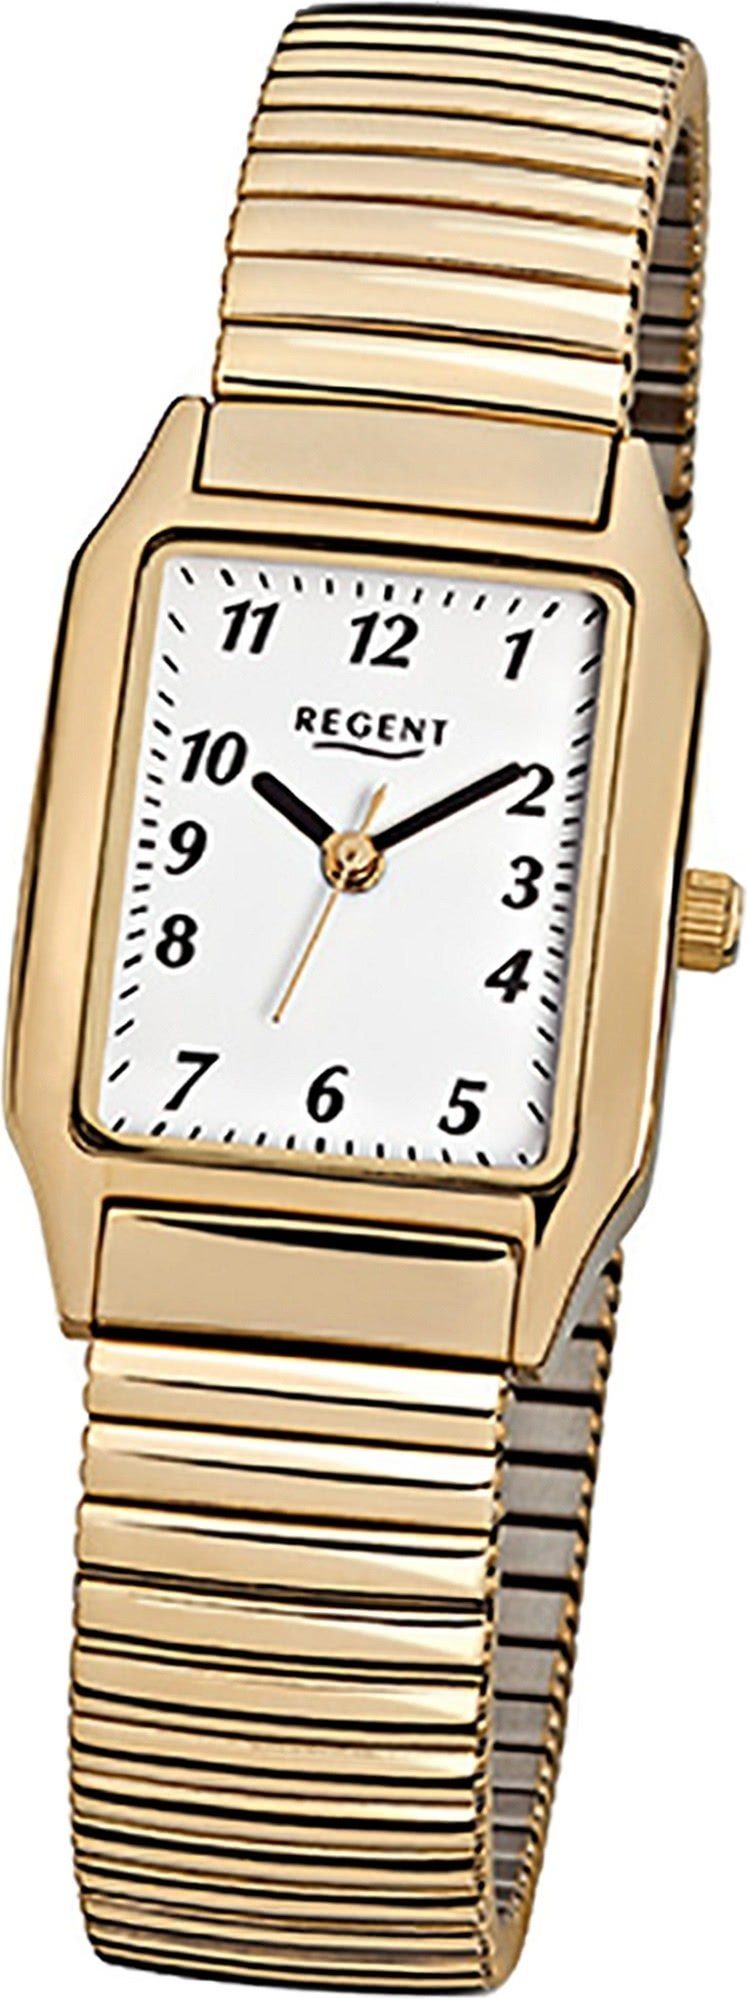 Regent Quarzuhr Regent Stahl Damen Uhr F-269 Quarzuhr, Damenuhr Edelstahl, ionenplattiert eckiges Gehäuse, klein (ca 23x26mm) | Quarzuhren